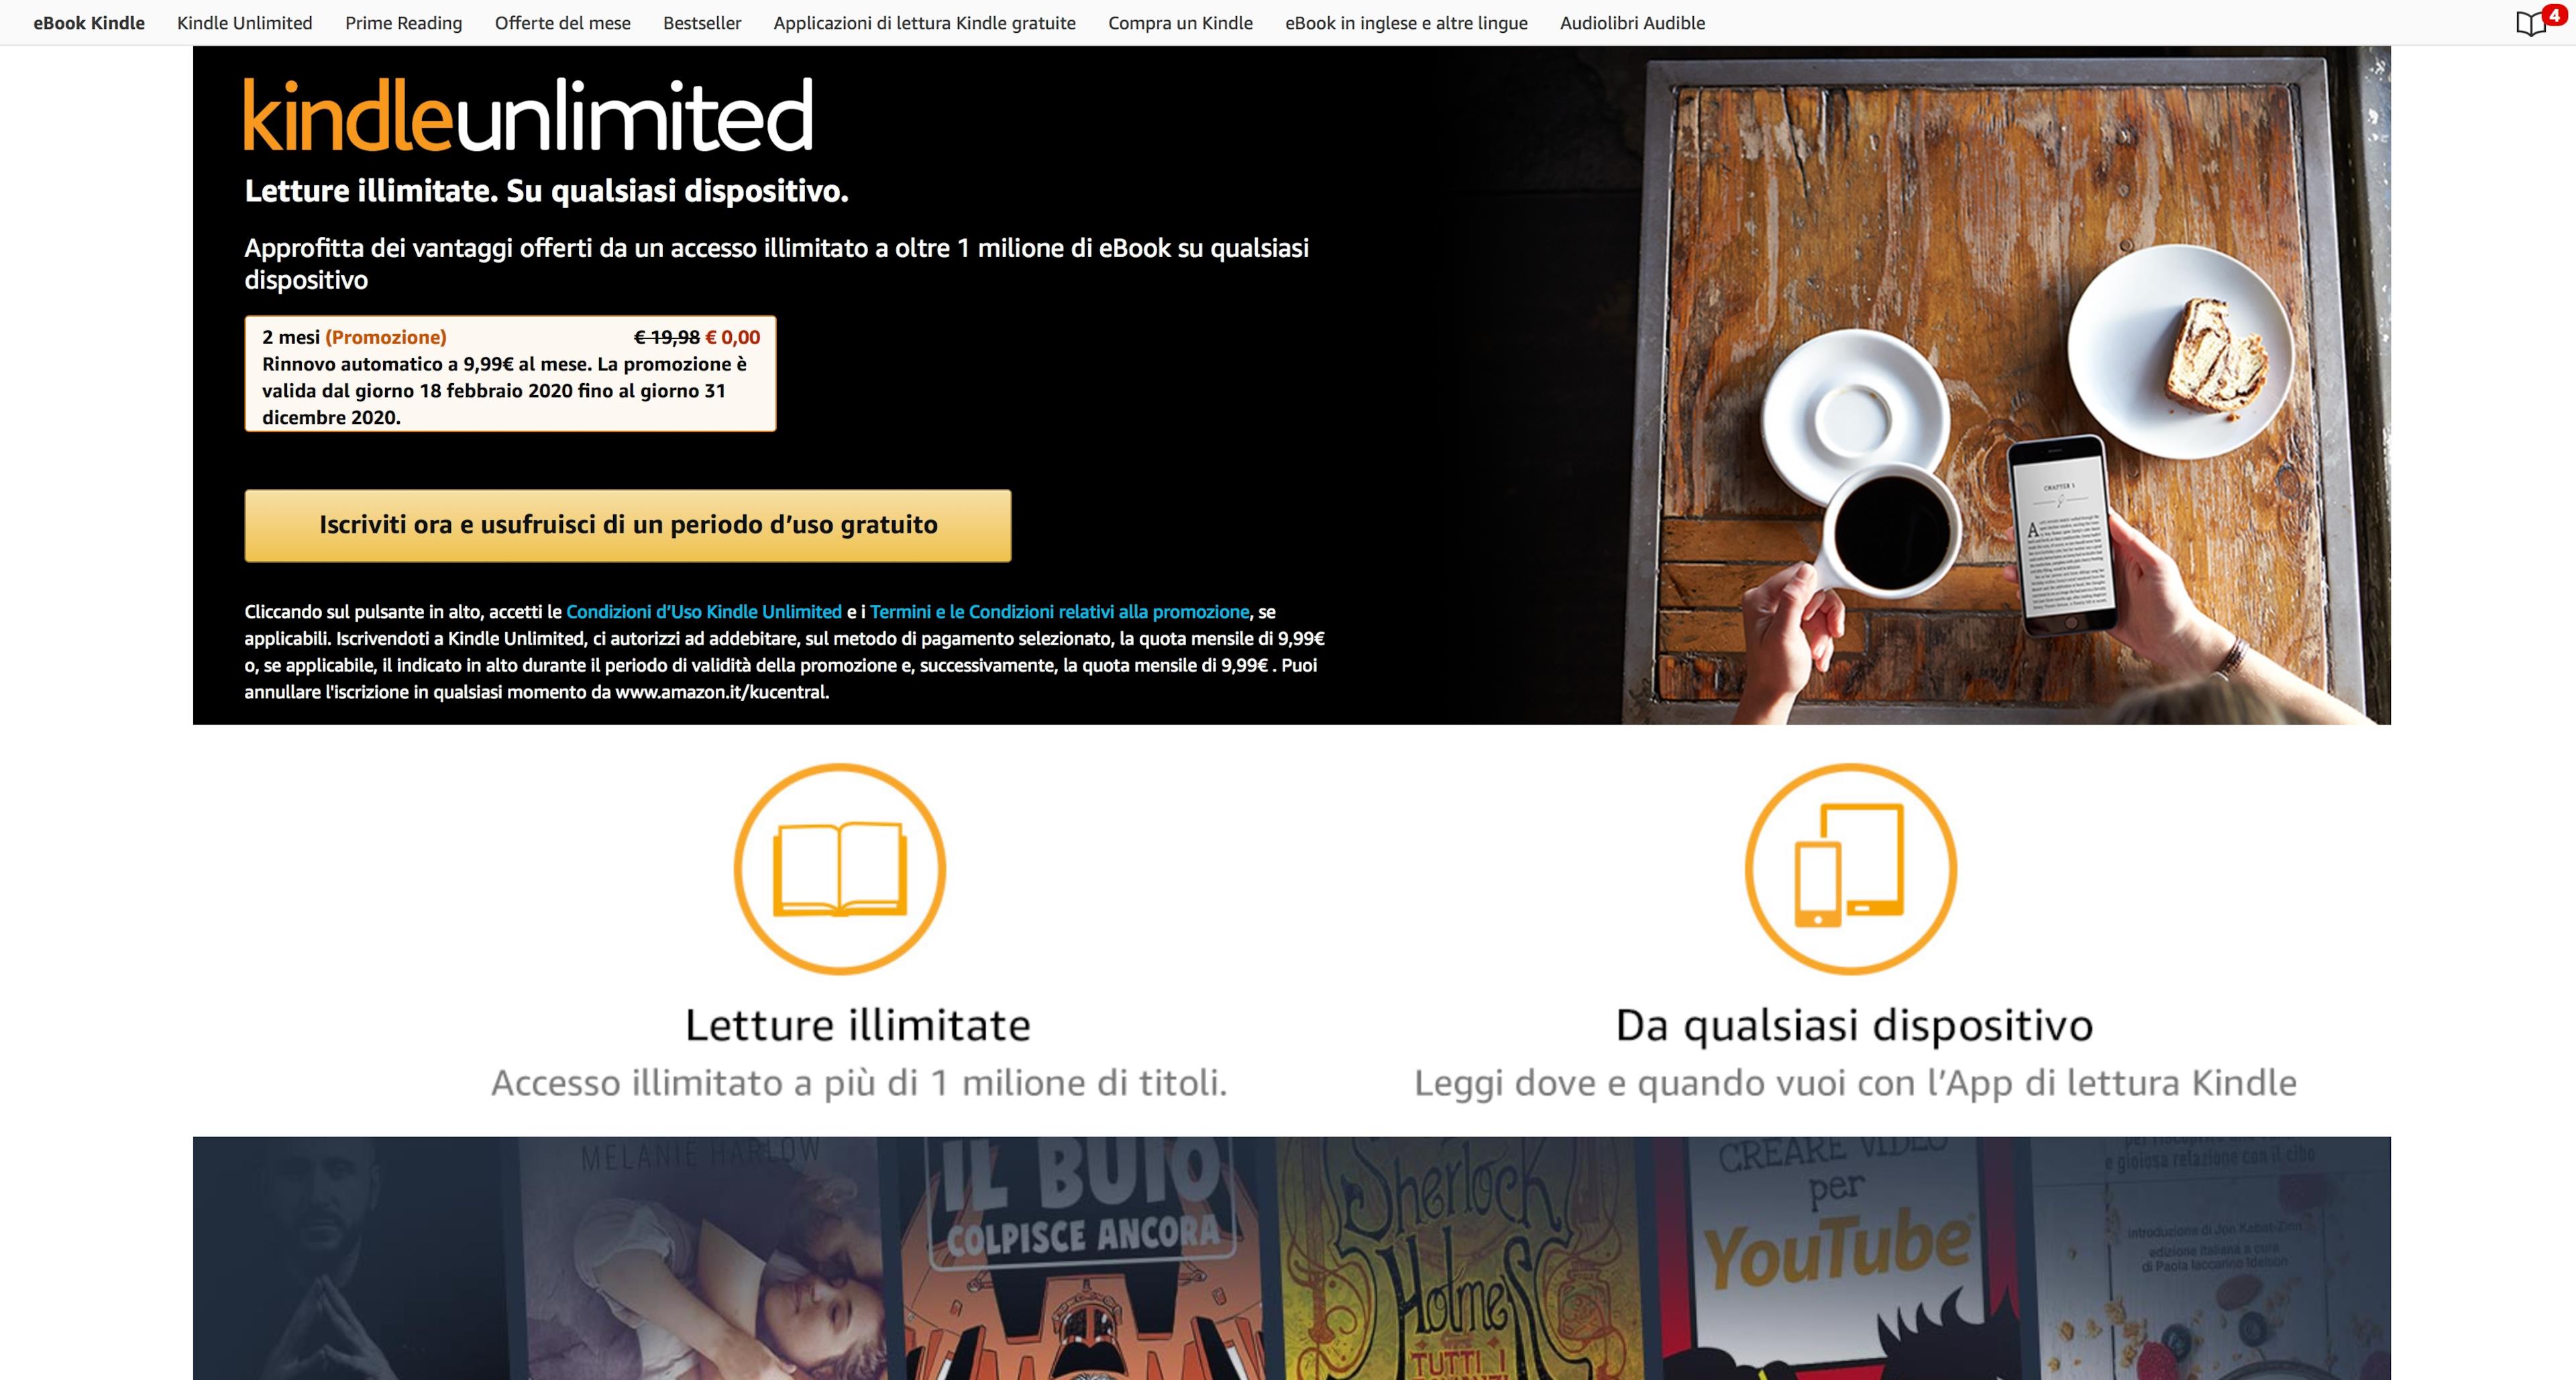 La homepage di Kindle Unlimited